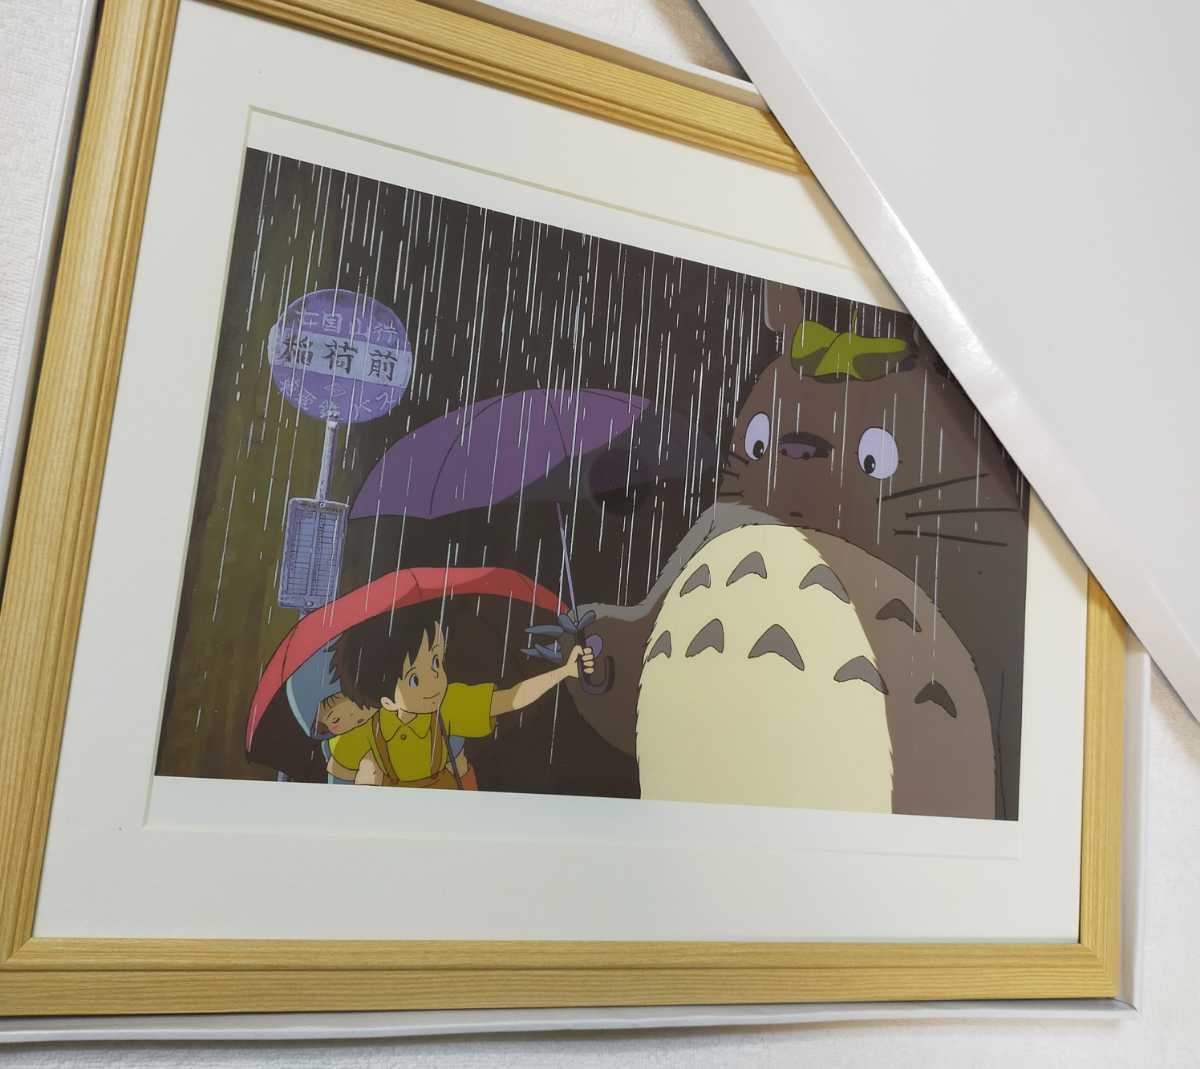 ¡Súper raro! Studio Ghibli Mi vecino Totoro [Artículo enmarcado] Póster de Totoro Pintura para colgar en la pared Reproducción Arte original Postal Calendario Ghibli Hayao Miyazaki, línea ta, Mi vecino Totoro, otros